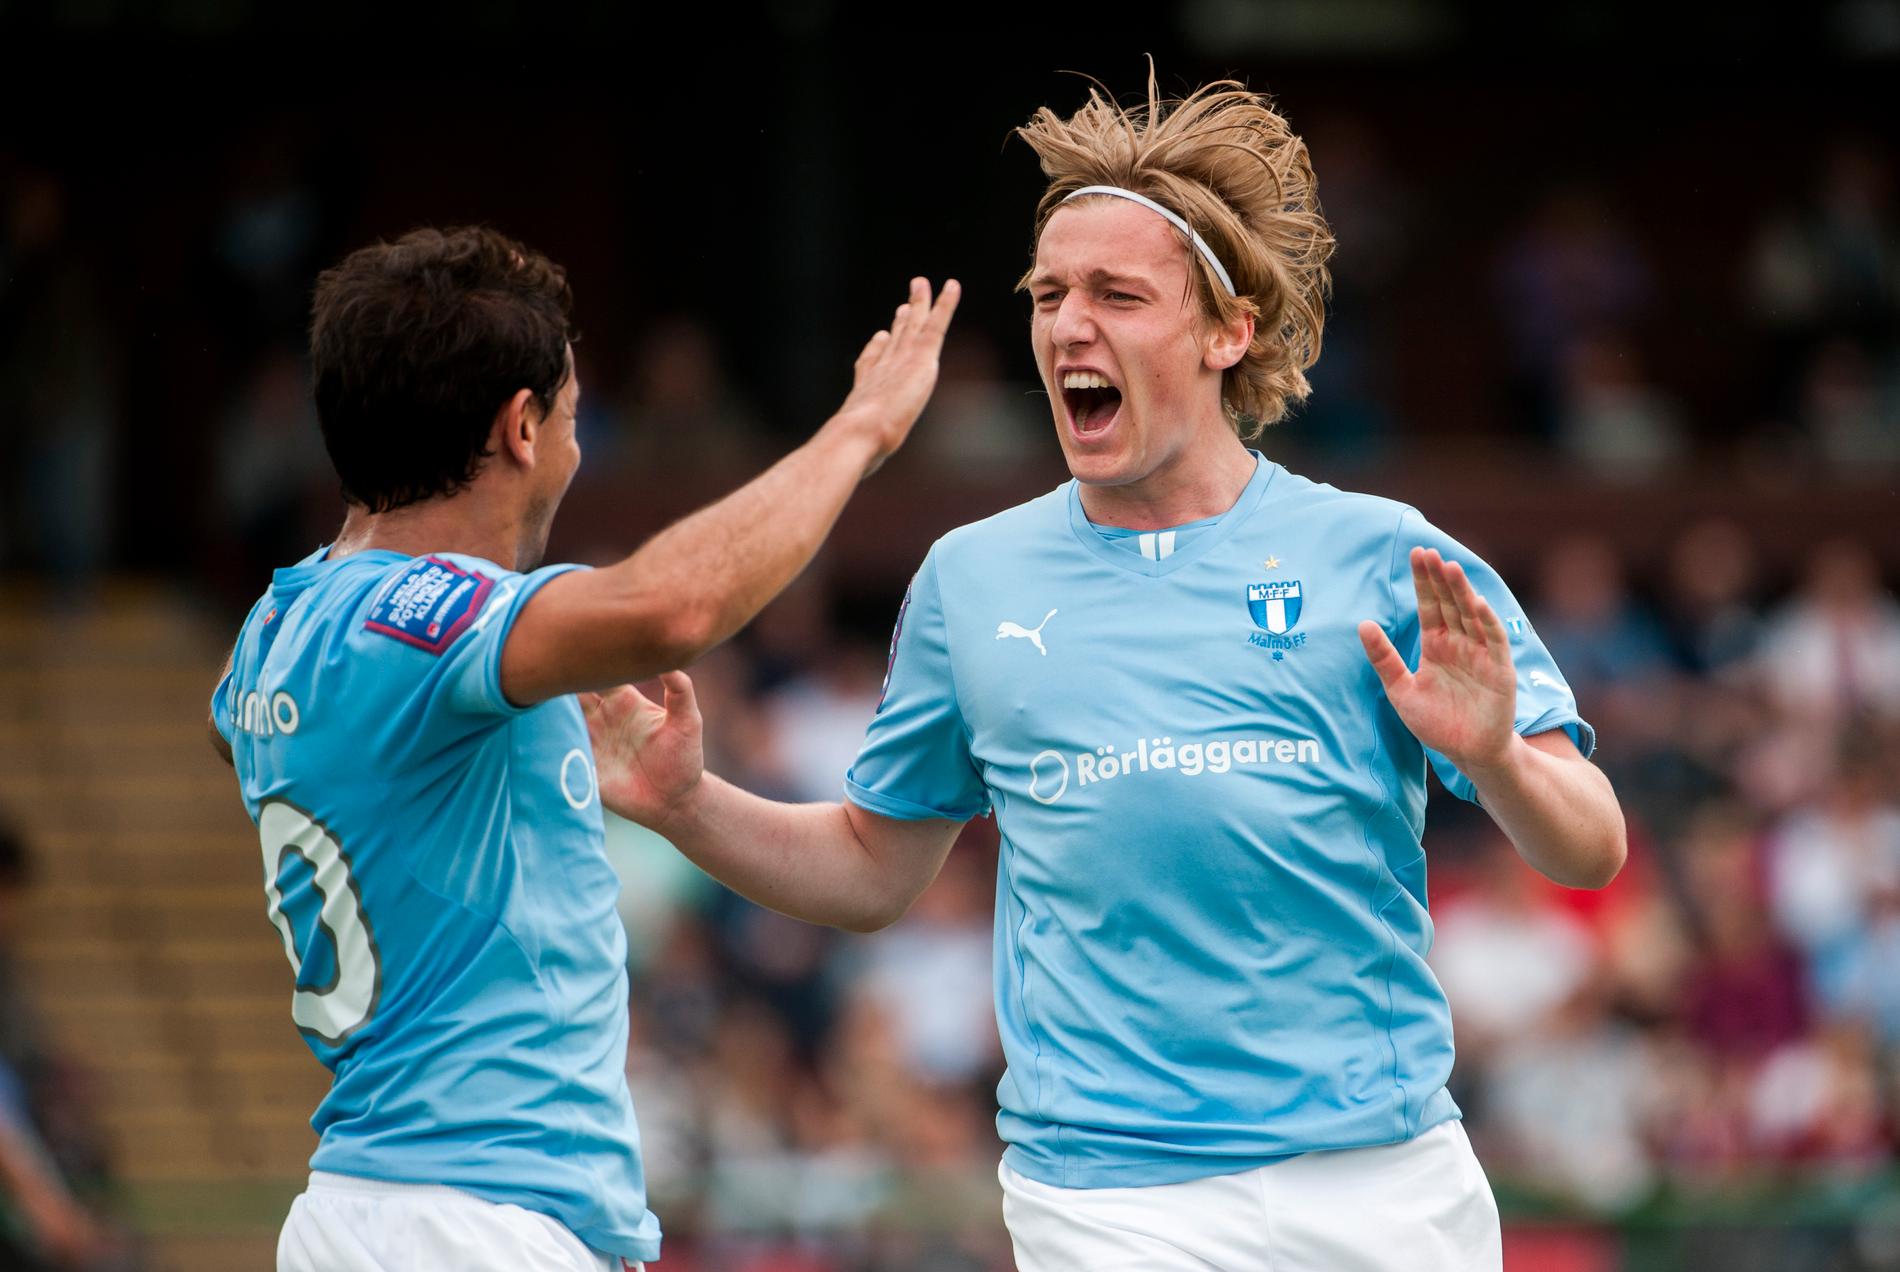 ISLOSSNING. Emil Forsberg, till höger, gjorde sina första två mål i den himmelsblå Malmötröjan.